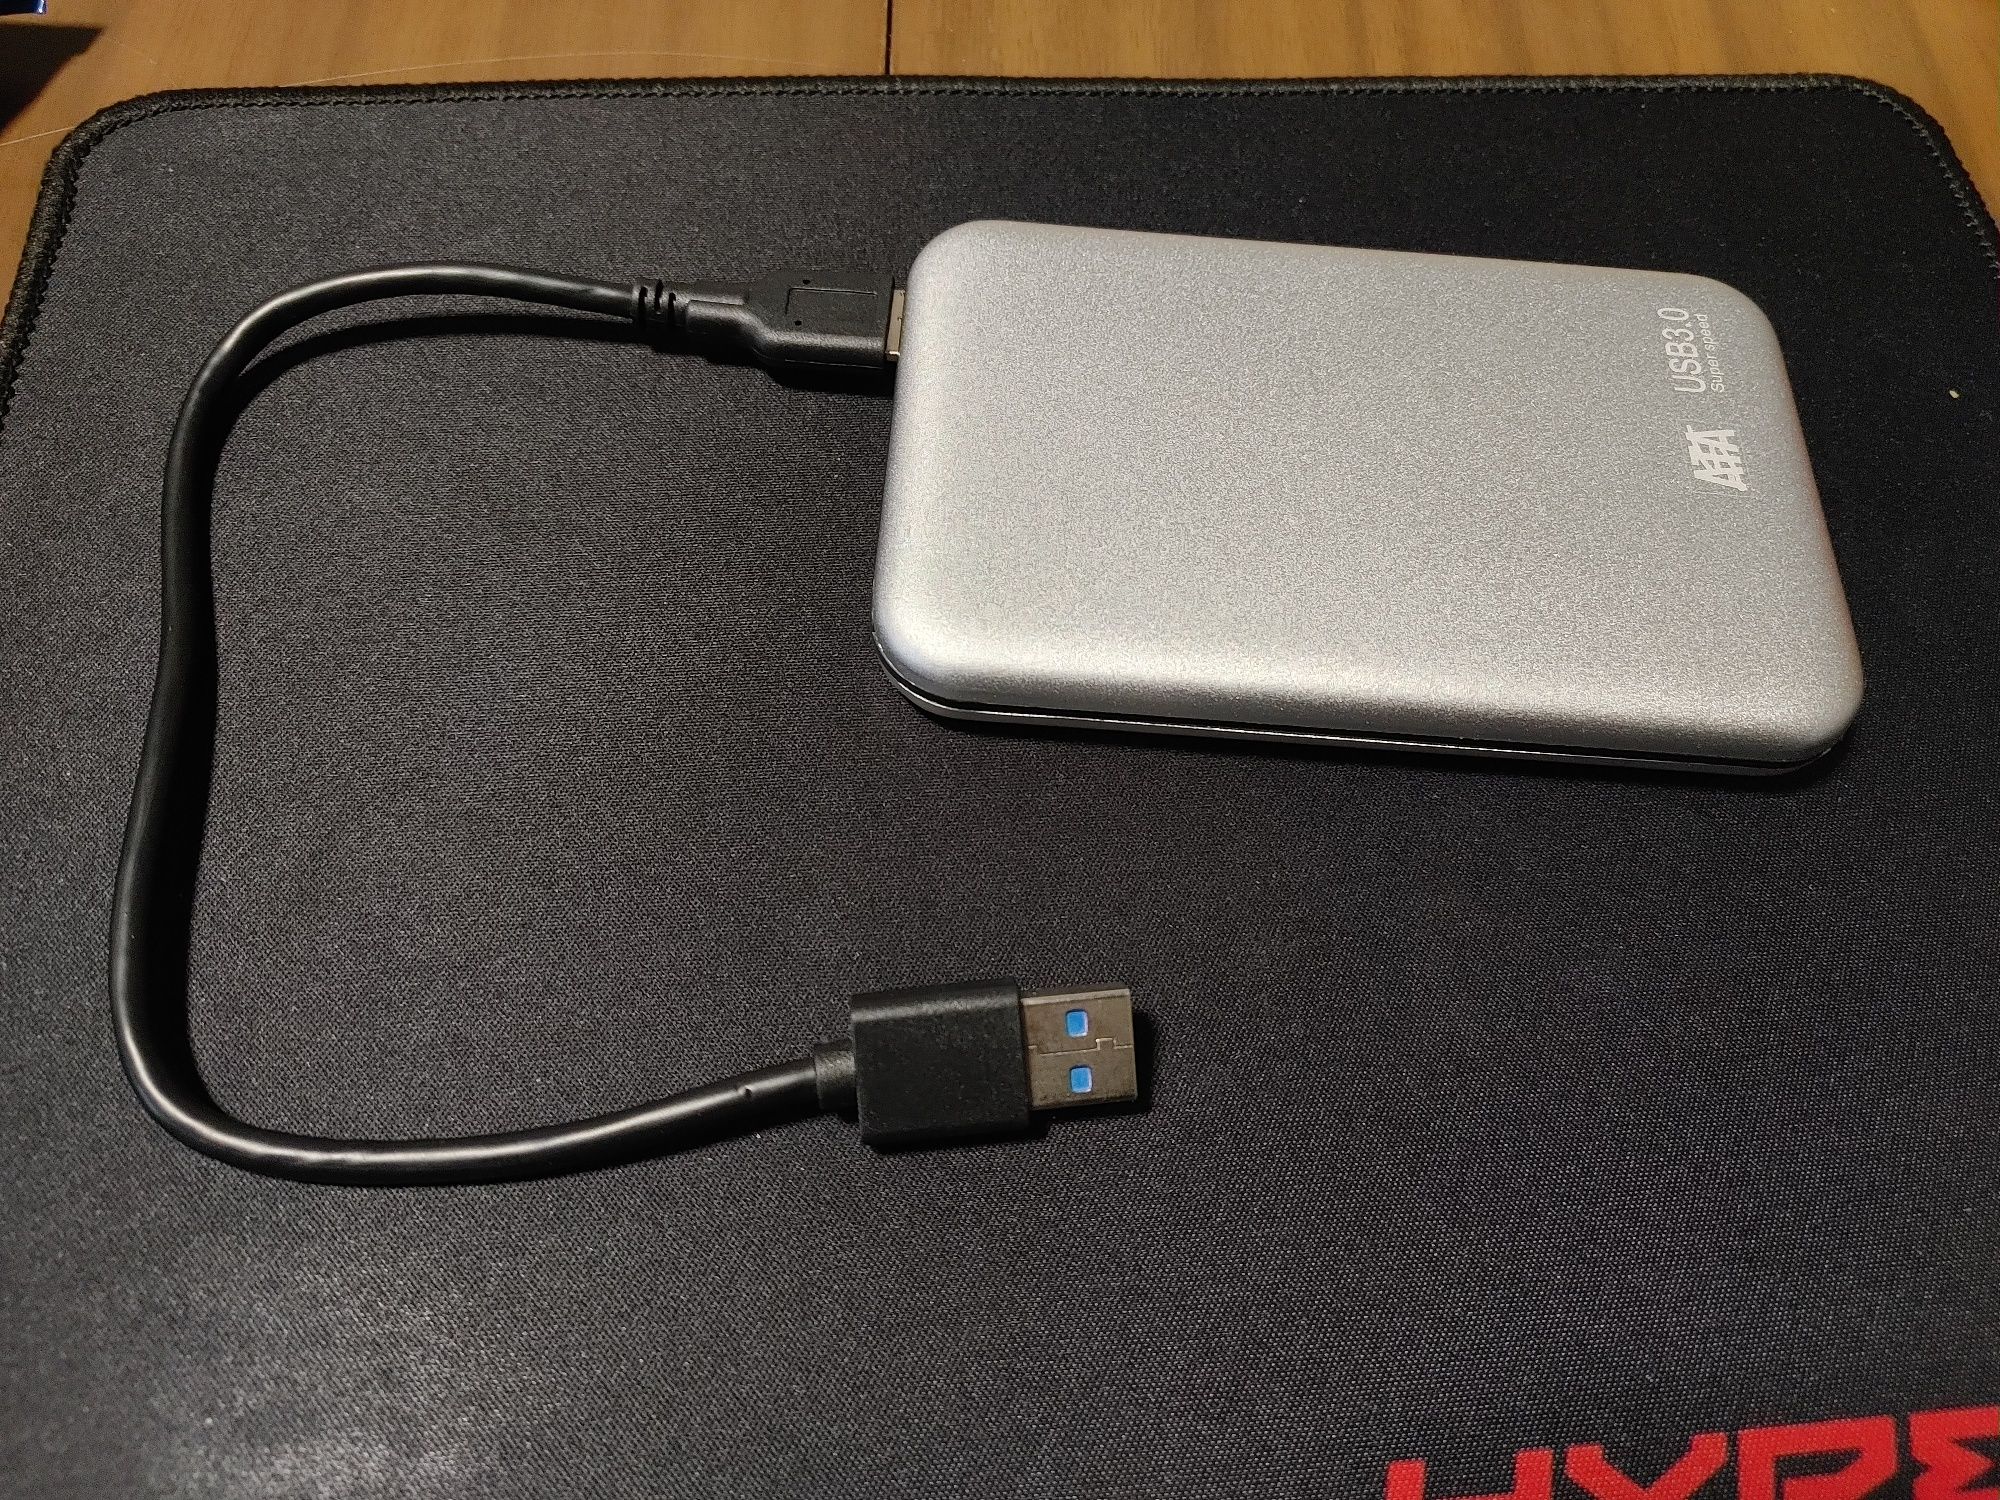 1 TB hard disc USB 3.0 yangi